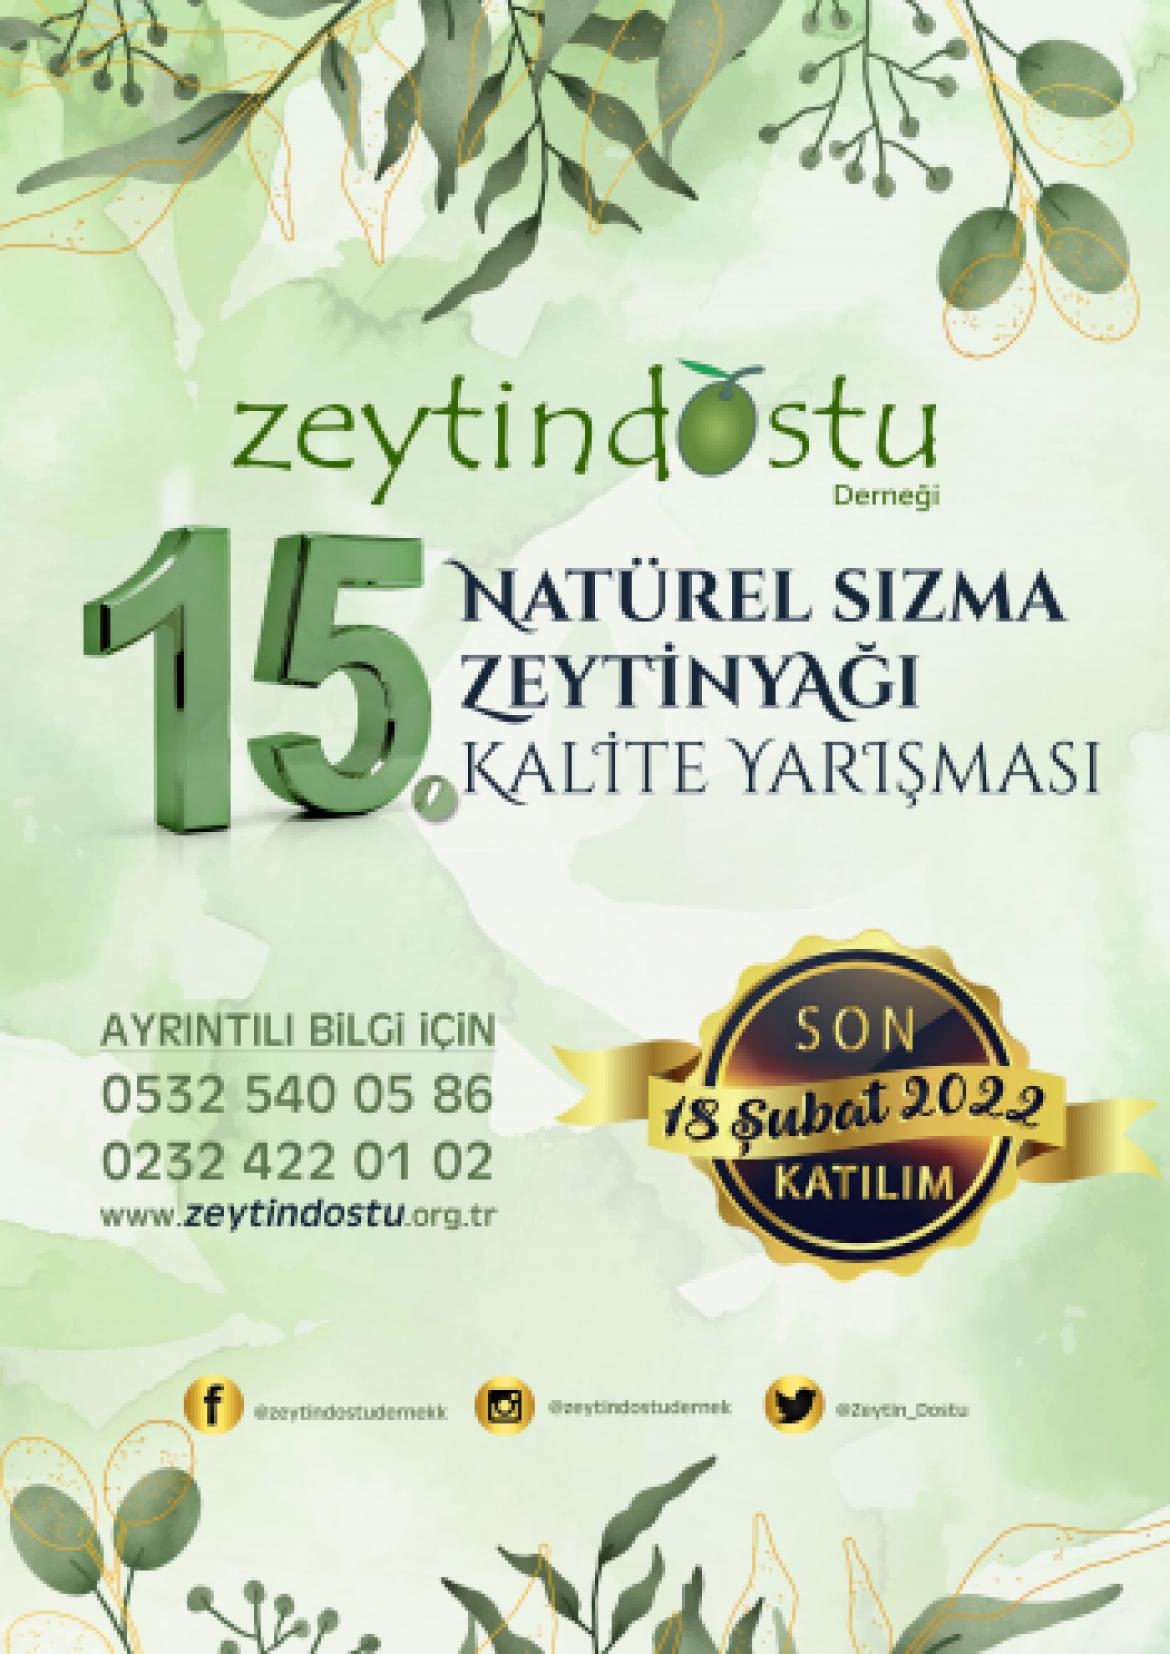 Zeytindostu Derneği 15. Natürel Sızma Zeytinyağı Kalite Yarışması duyurusunu yayınladı.